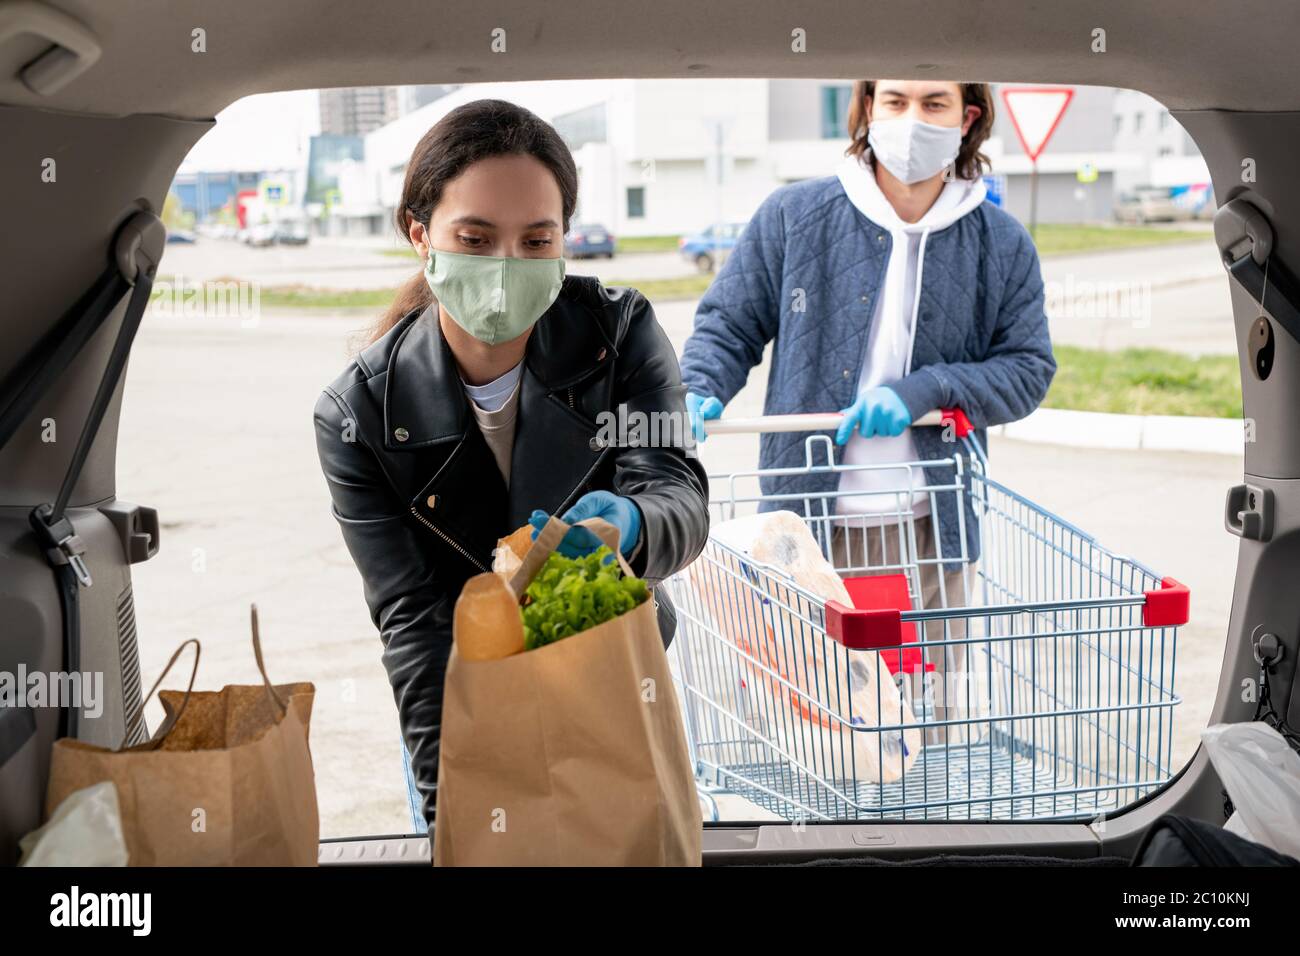 Giovane donna in maschera mettendo in macchina borse di carta piene di prodotti mentre il ragazzo si trova con il carrello dietro di lei Foto Stock